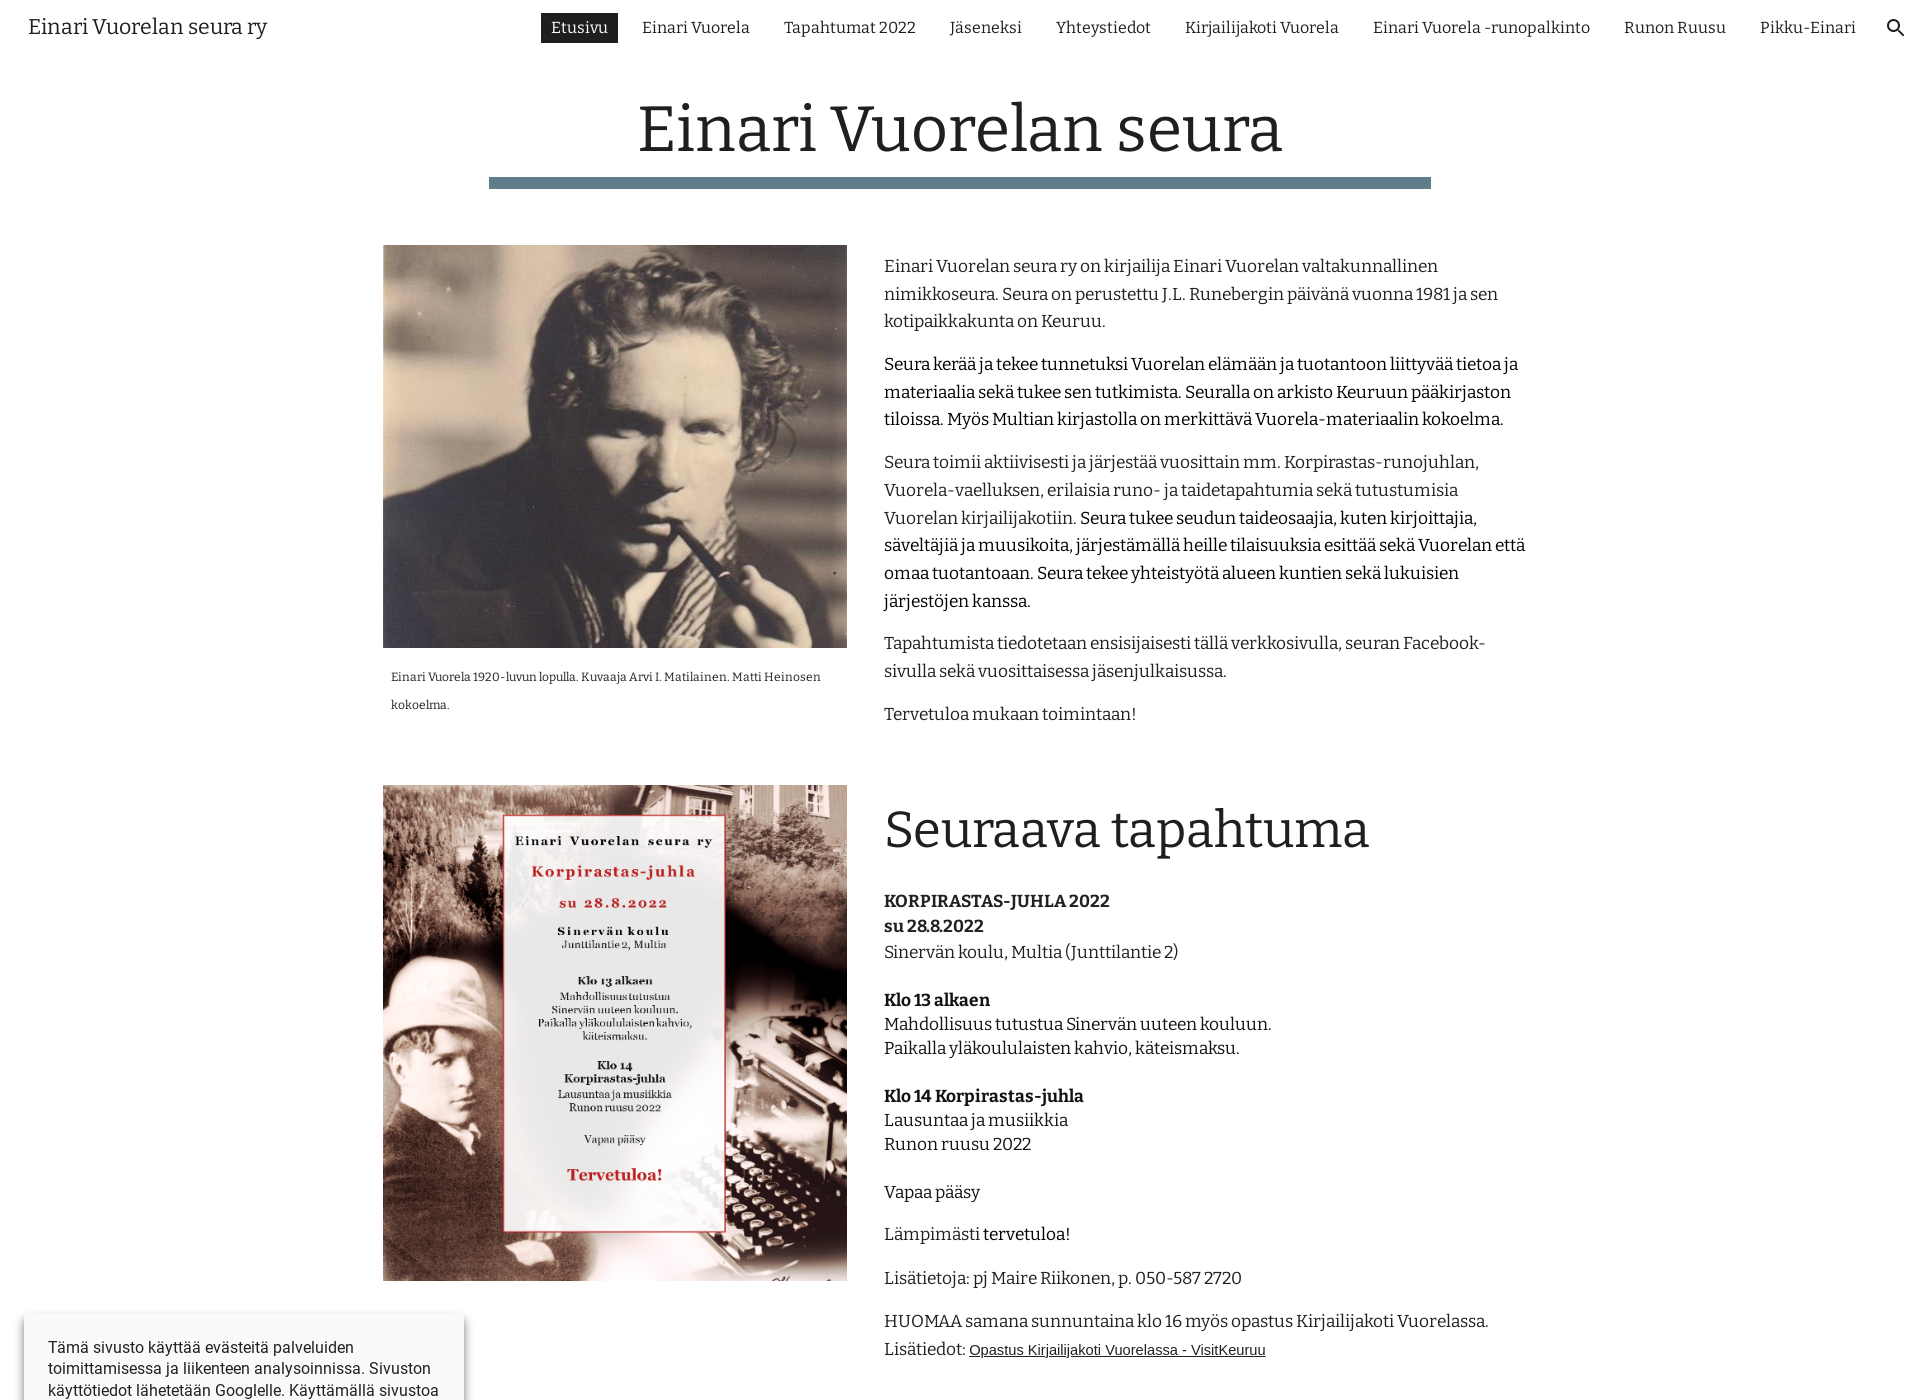 Skärmdump för einarivuorelanseura.fi